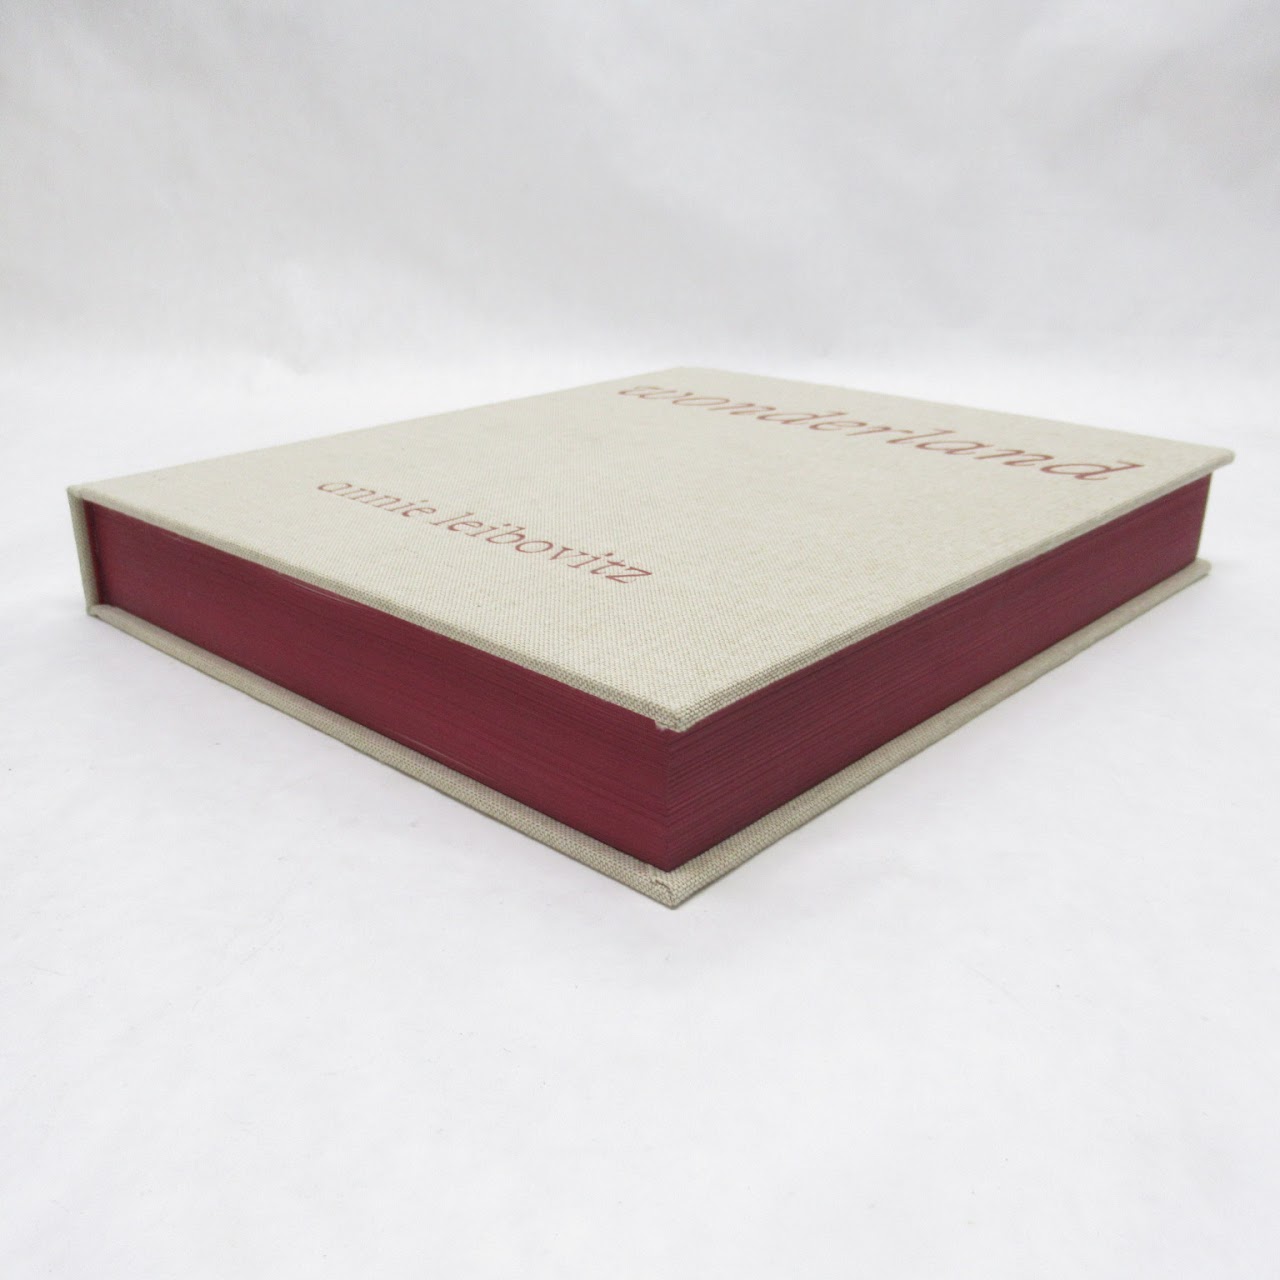 Annie Leibovitz 'Wonderland' Inscribed Hardcover